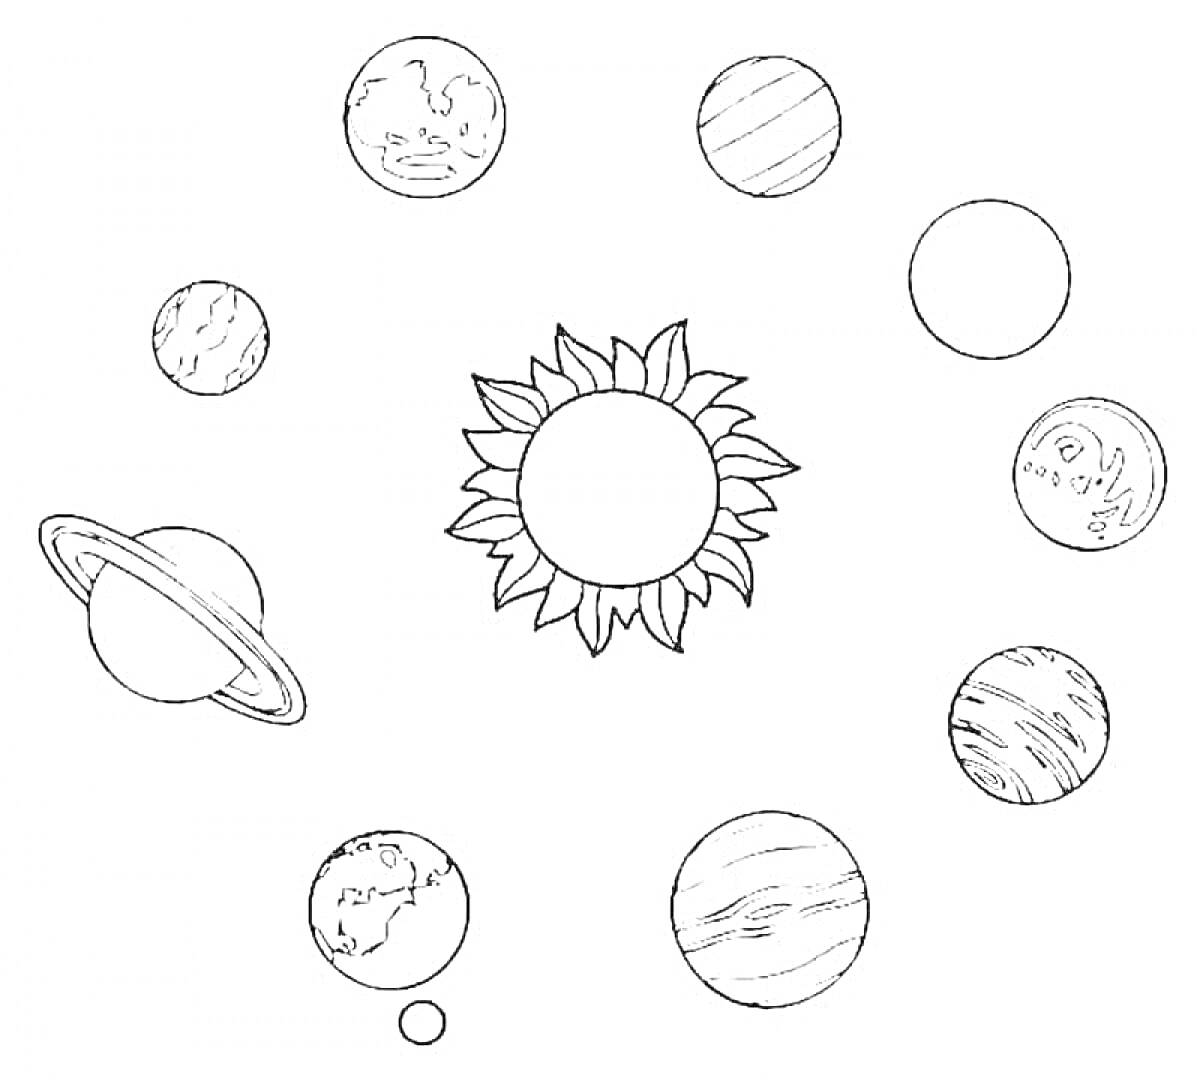 Раскраска Солнце и планеты Солнечной системы (Солнце, планеты, орбиты, кольца)